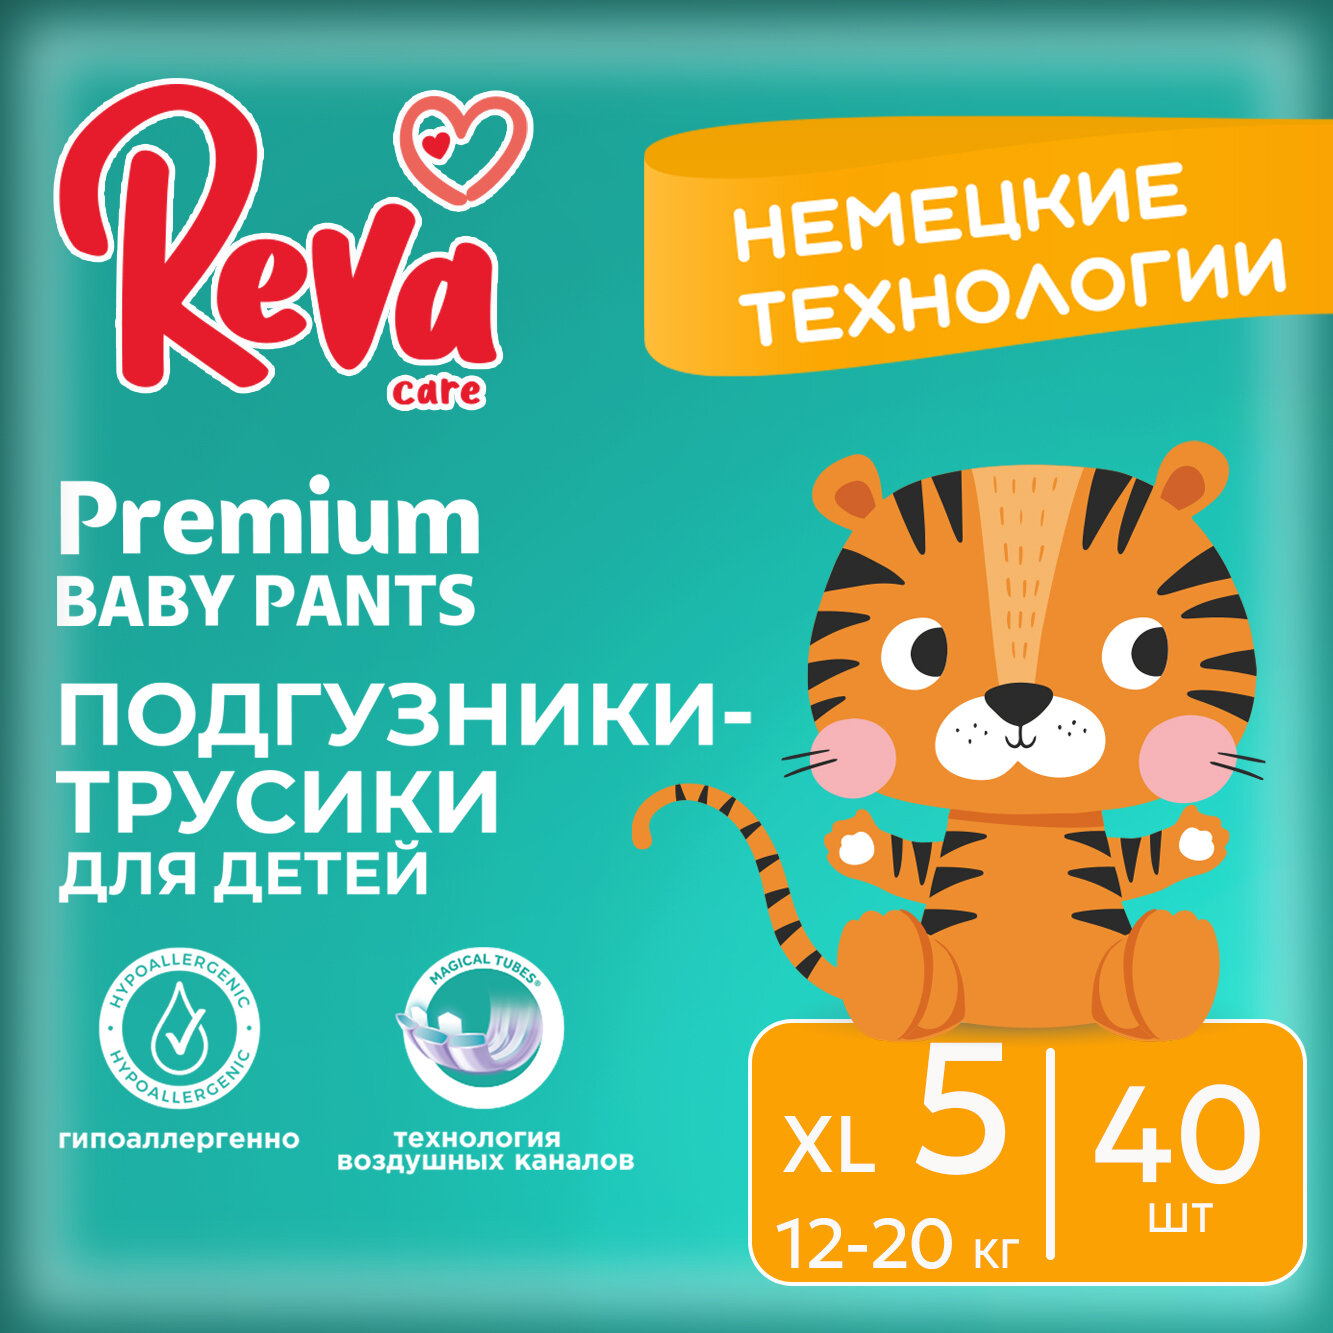 Подгузники трусики детские Reva Care Premium размер 5 XL, для детей весом 12-20 кг, в упаковке 40 шт.